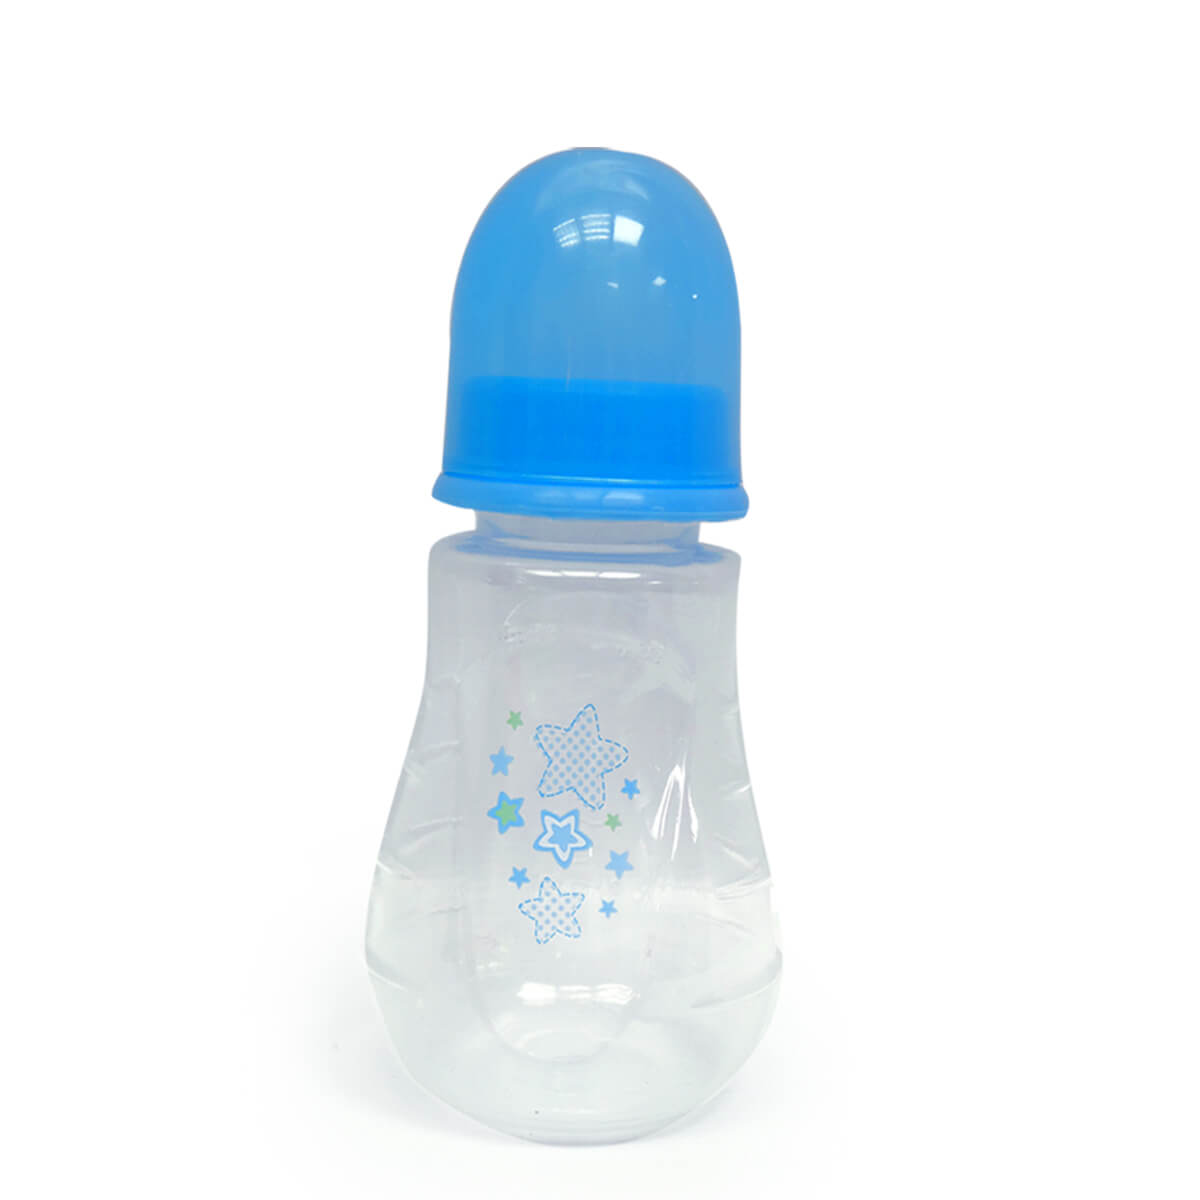 בקבוק בעל צלעות מונעות החלקה כחול (125 מ”ל) טוויגי